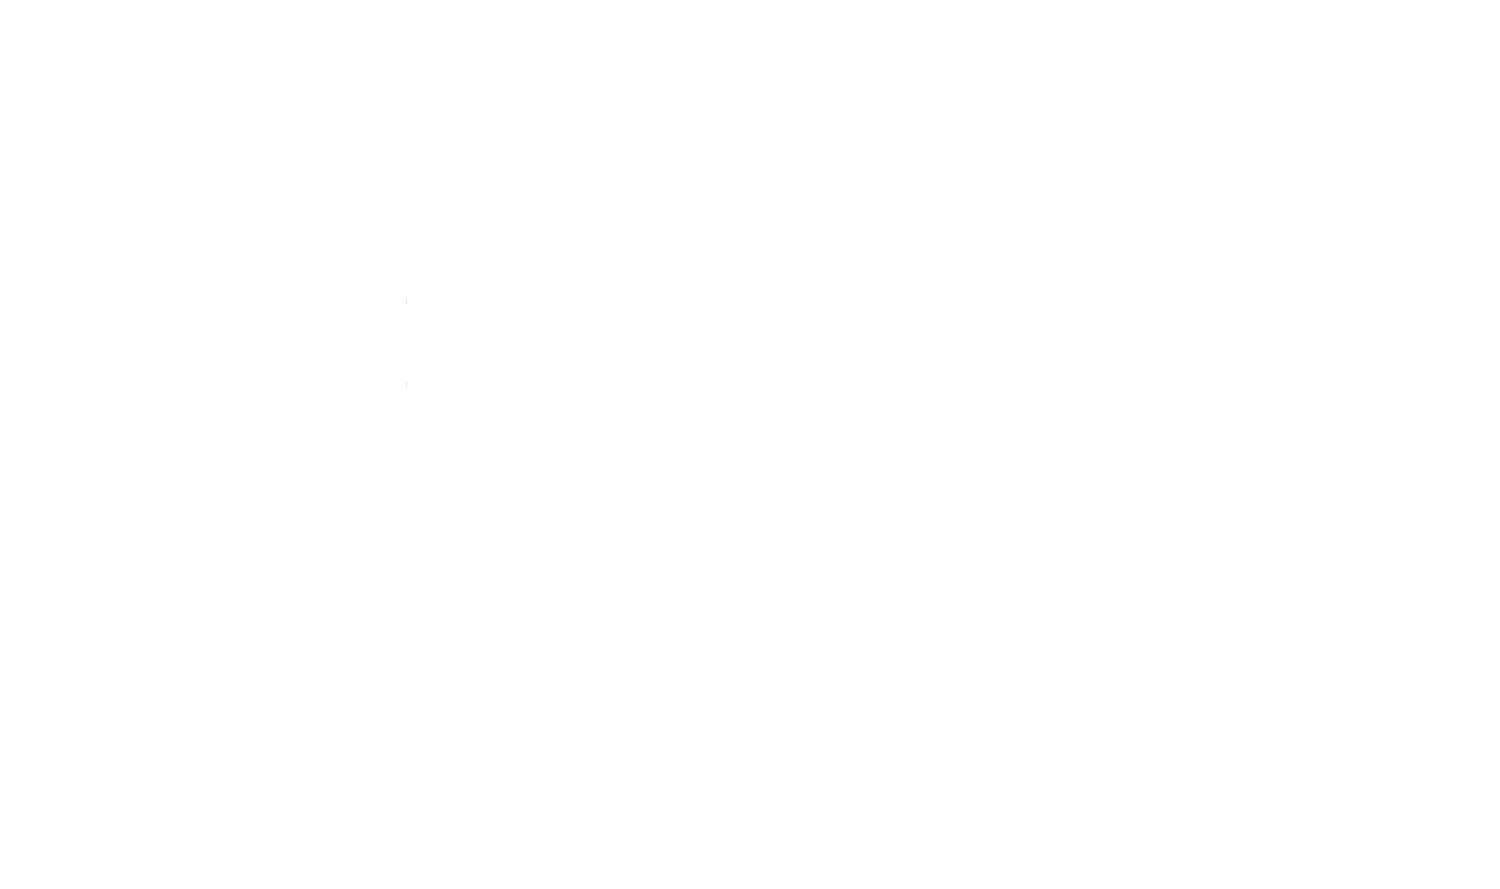 Indigital Media